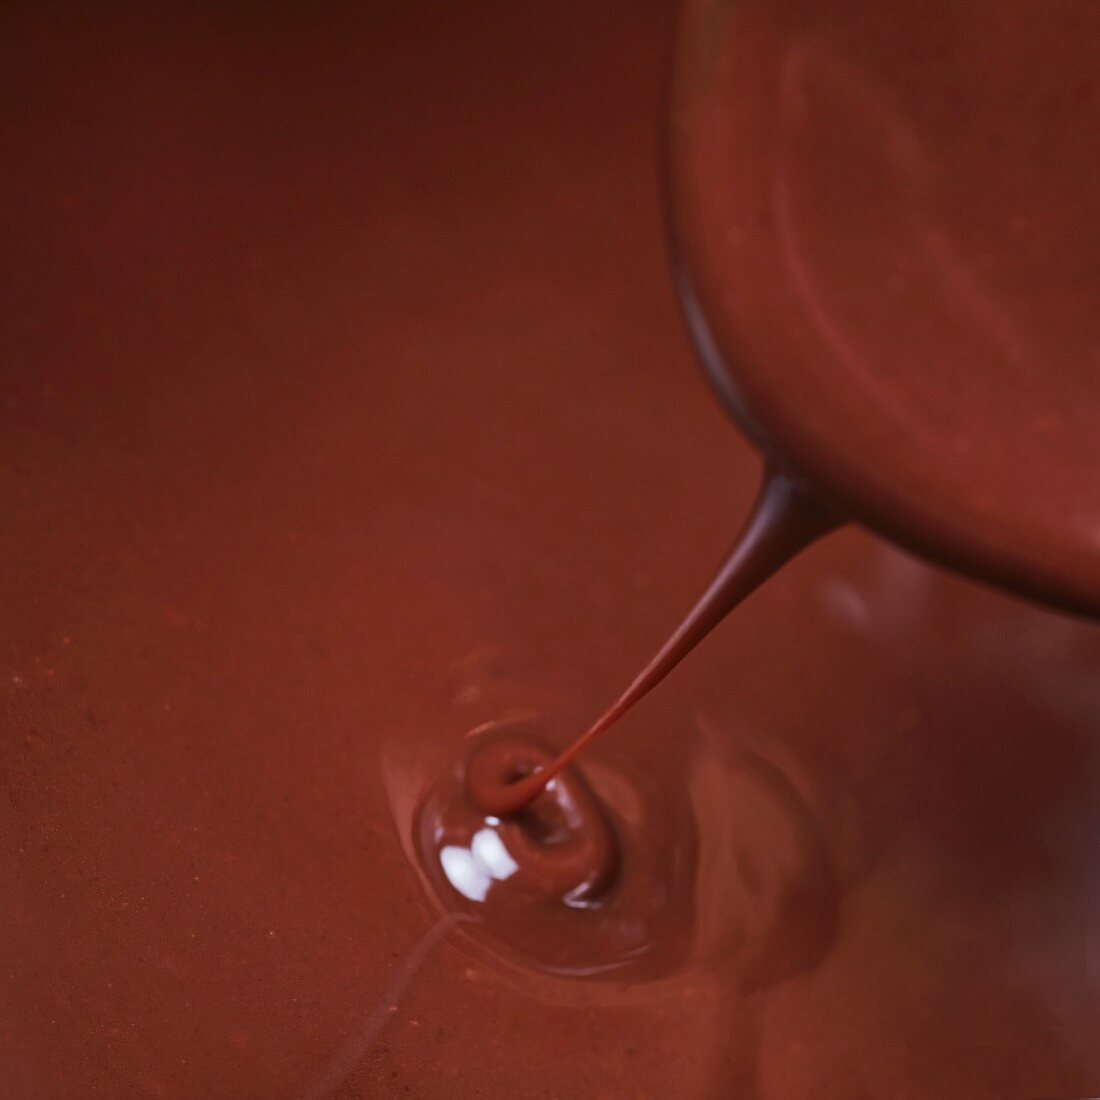 Schokoladensauce fliesst vom Löffel in einen heißen Topf